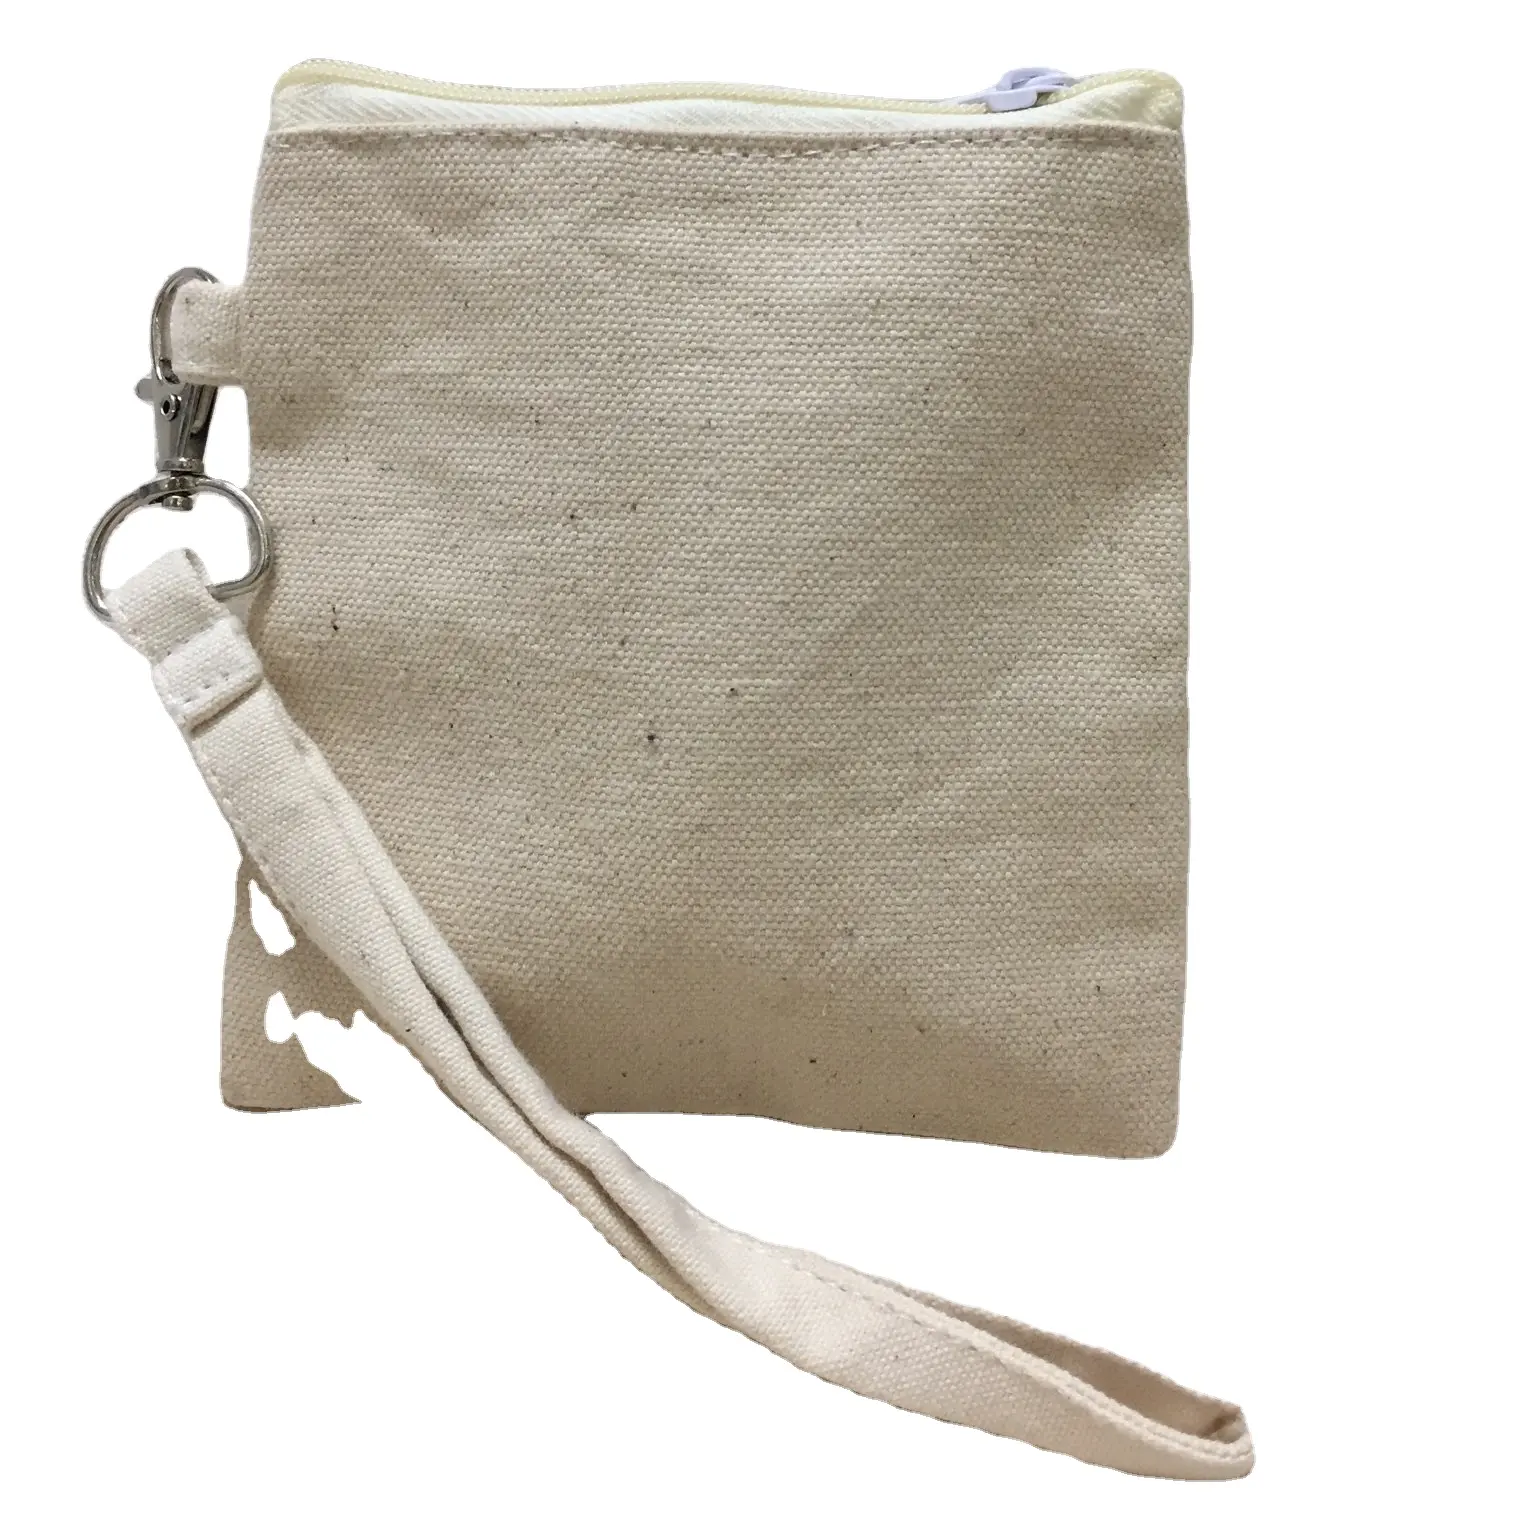 الطباعة حقيبة قطنية مع شعار قماش التعبئة حمل حقيبة اليد زيبر حقيبة قطنية